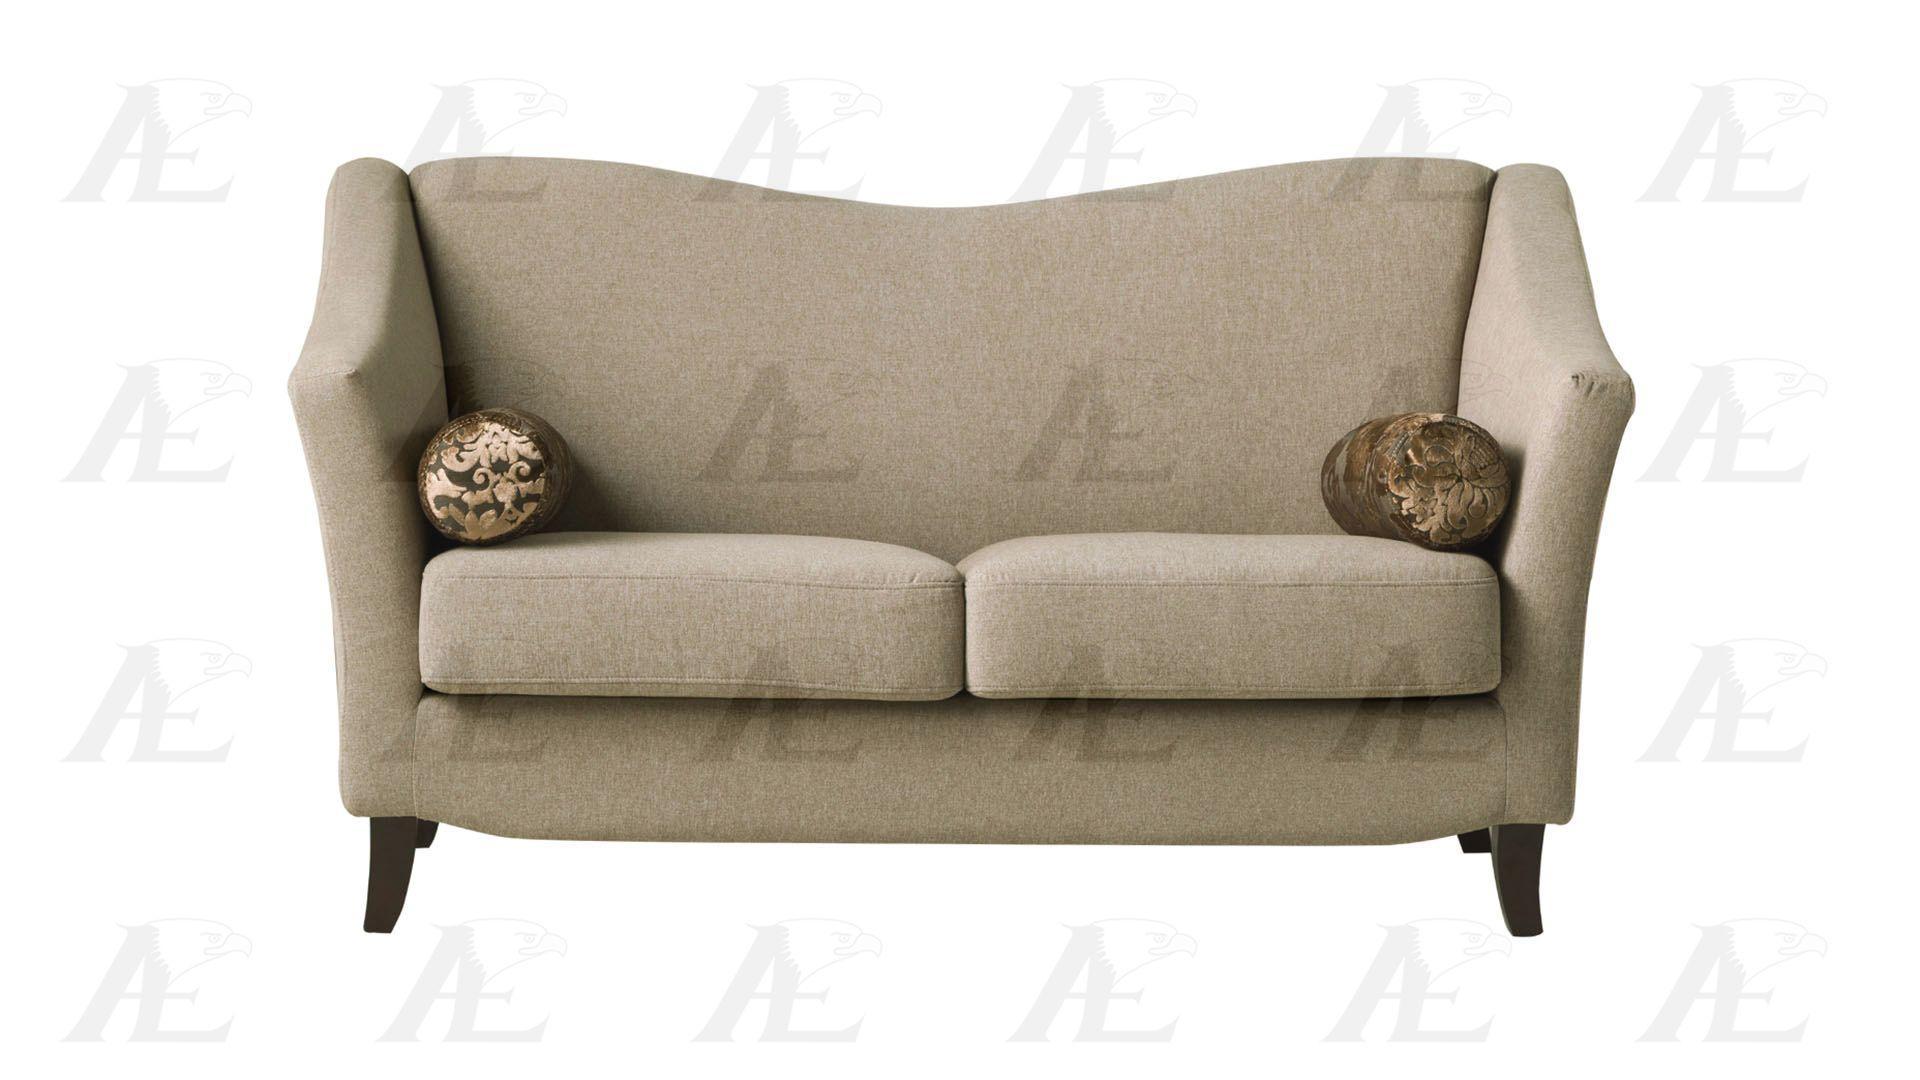 

    
AE2371 Set-2 American Eagle Furniture Sofa and Loveseat Set
